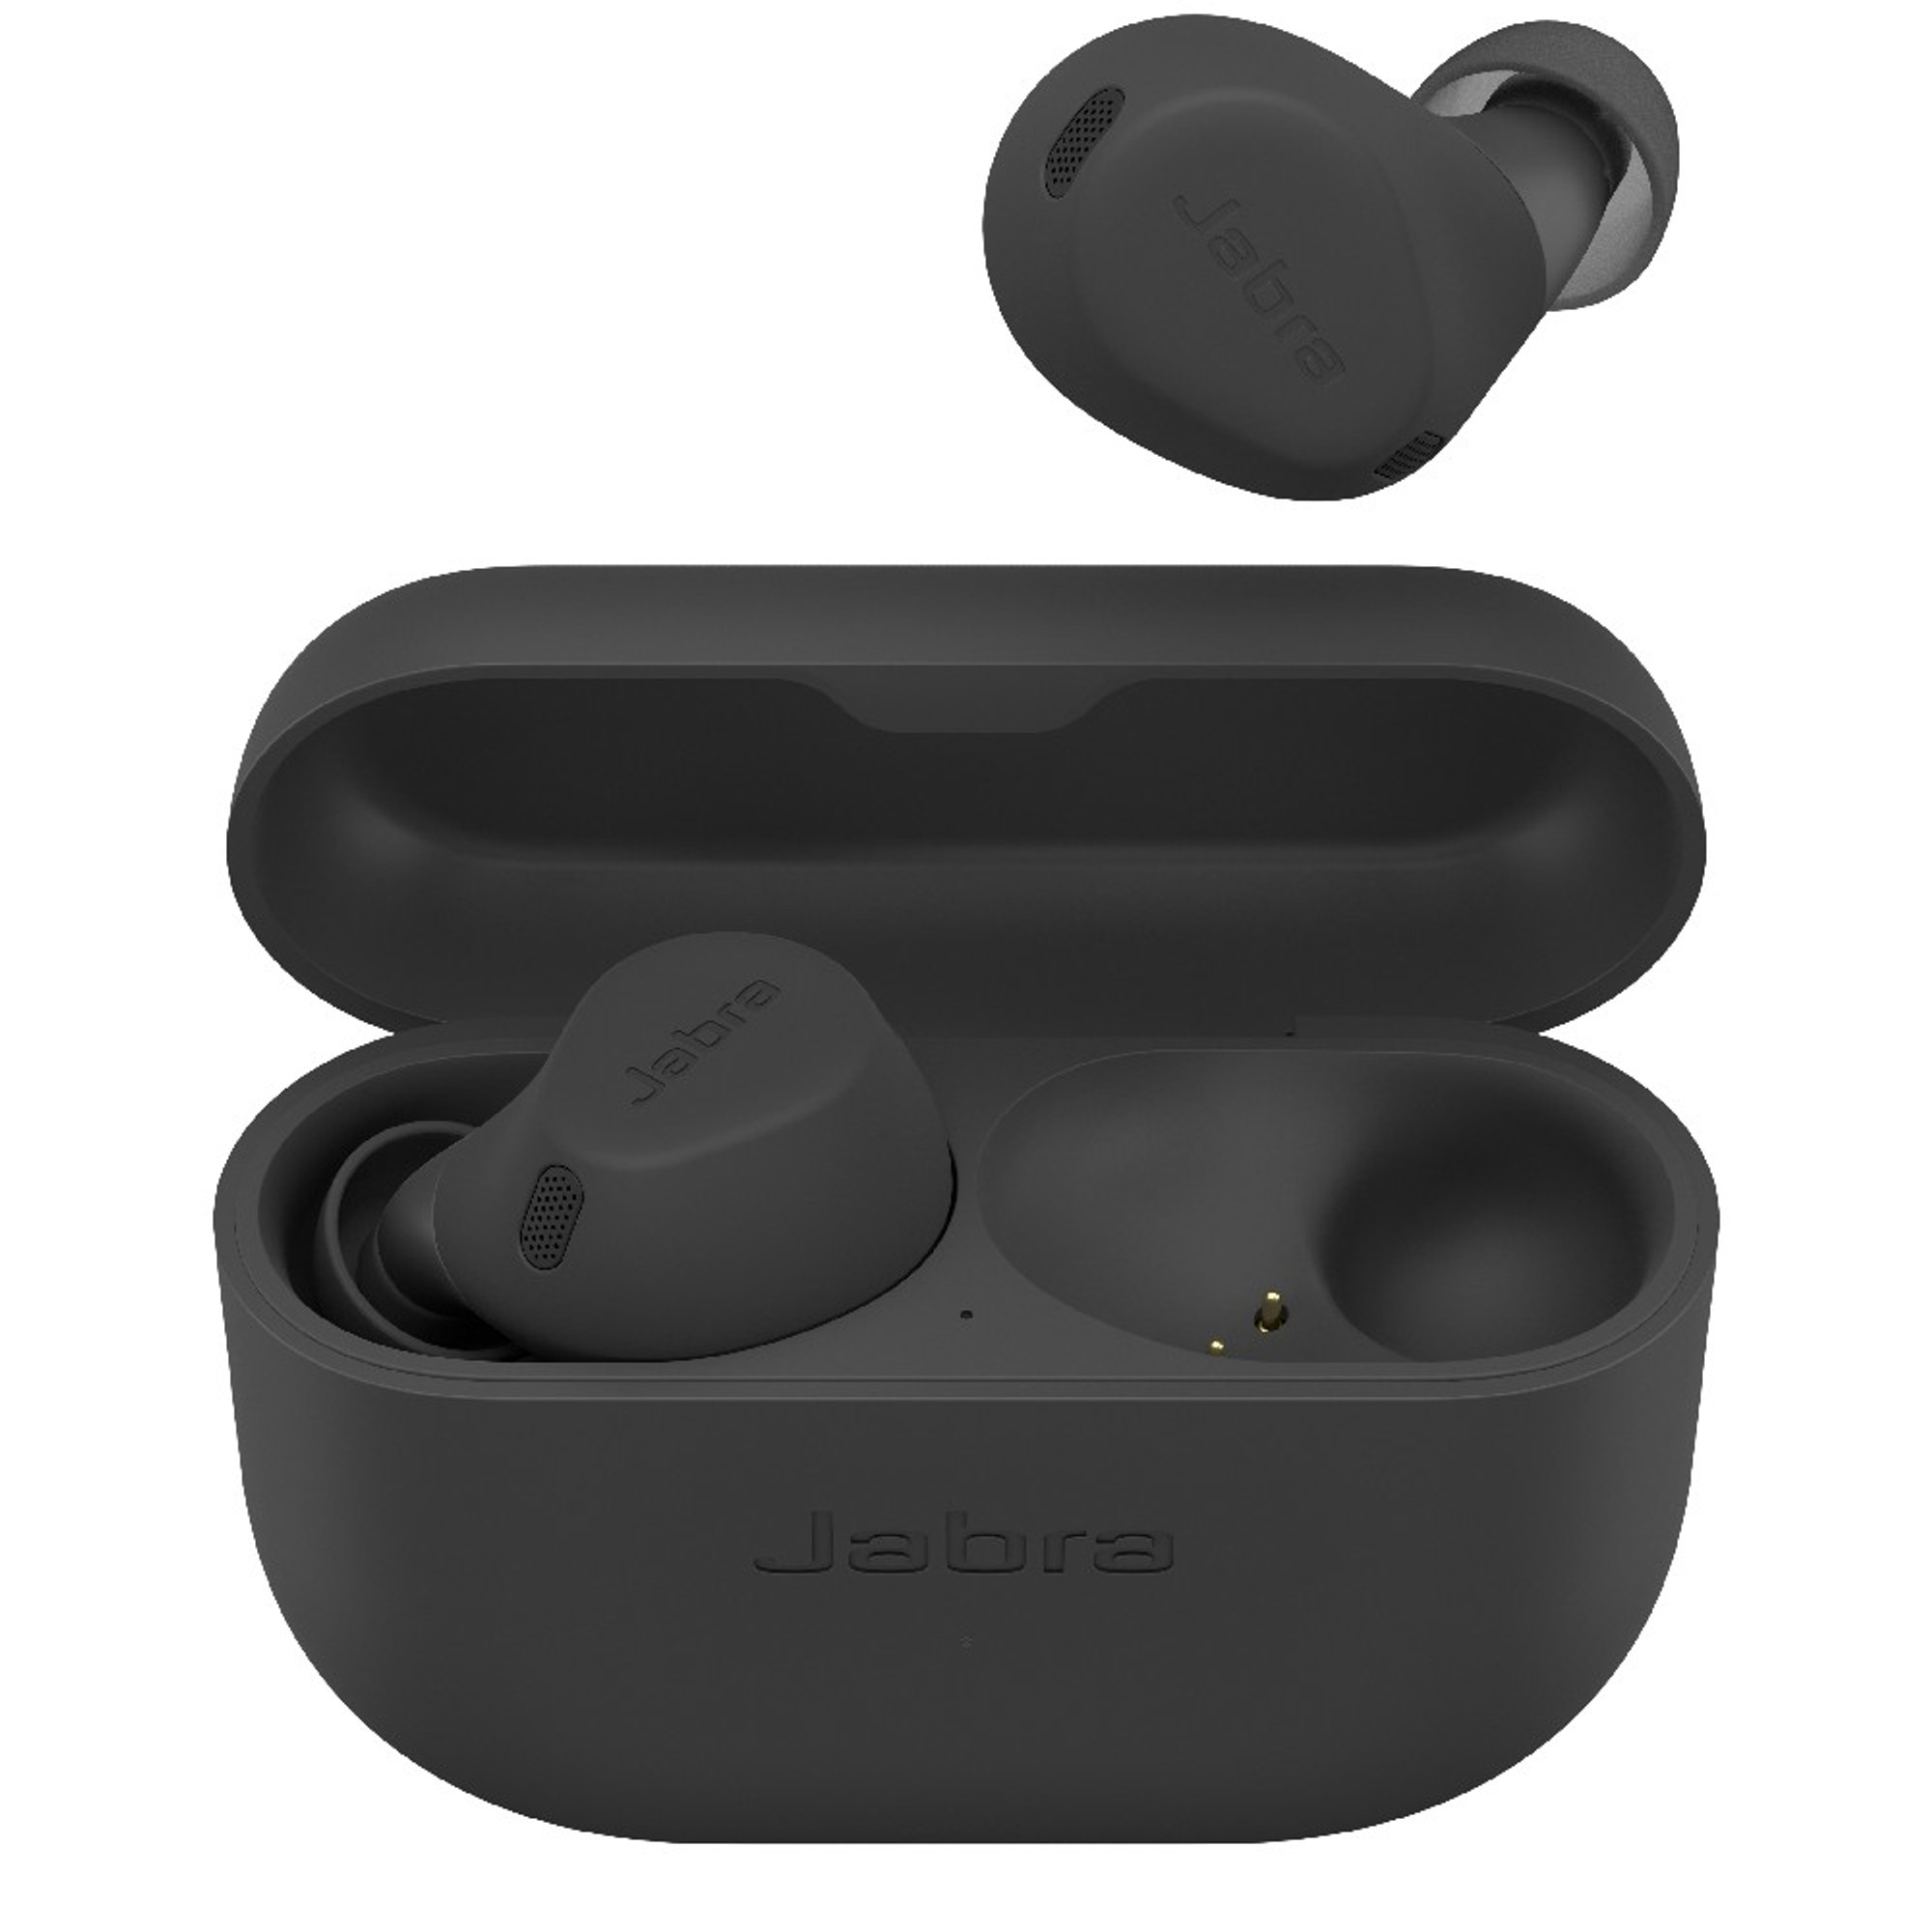 Jabra Elite 2 True Wireless Earbuds, Noise Isolating, Dark Grey